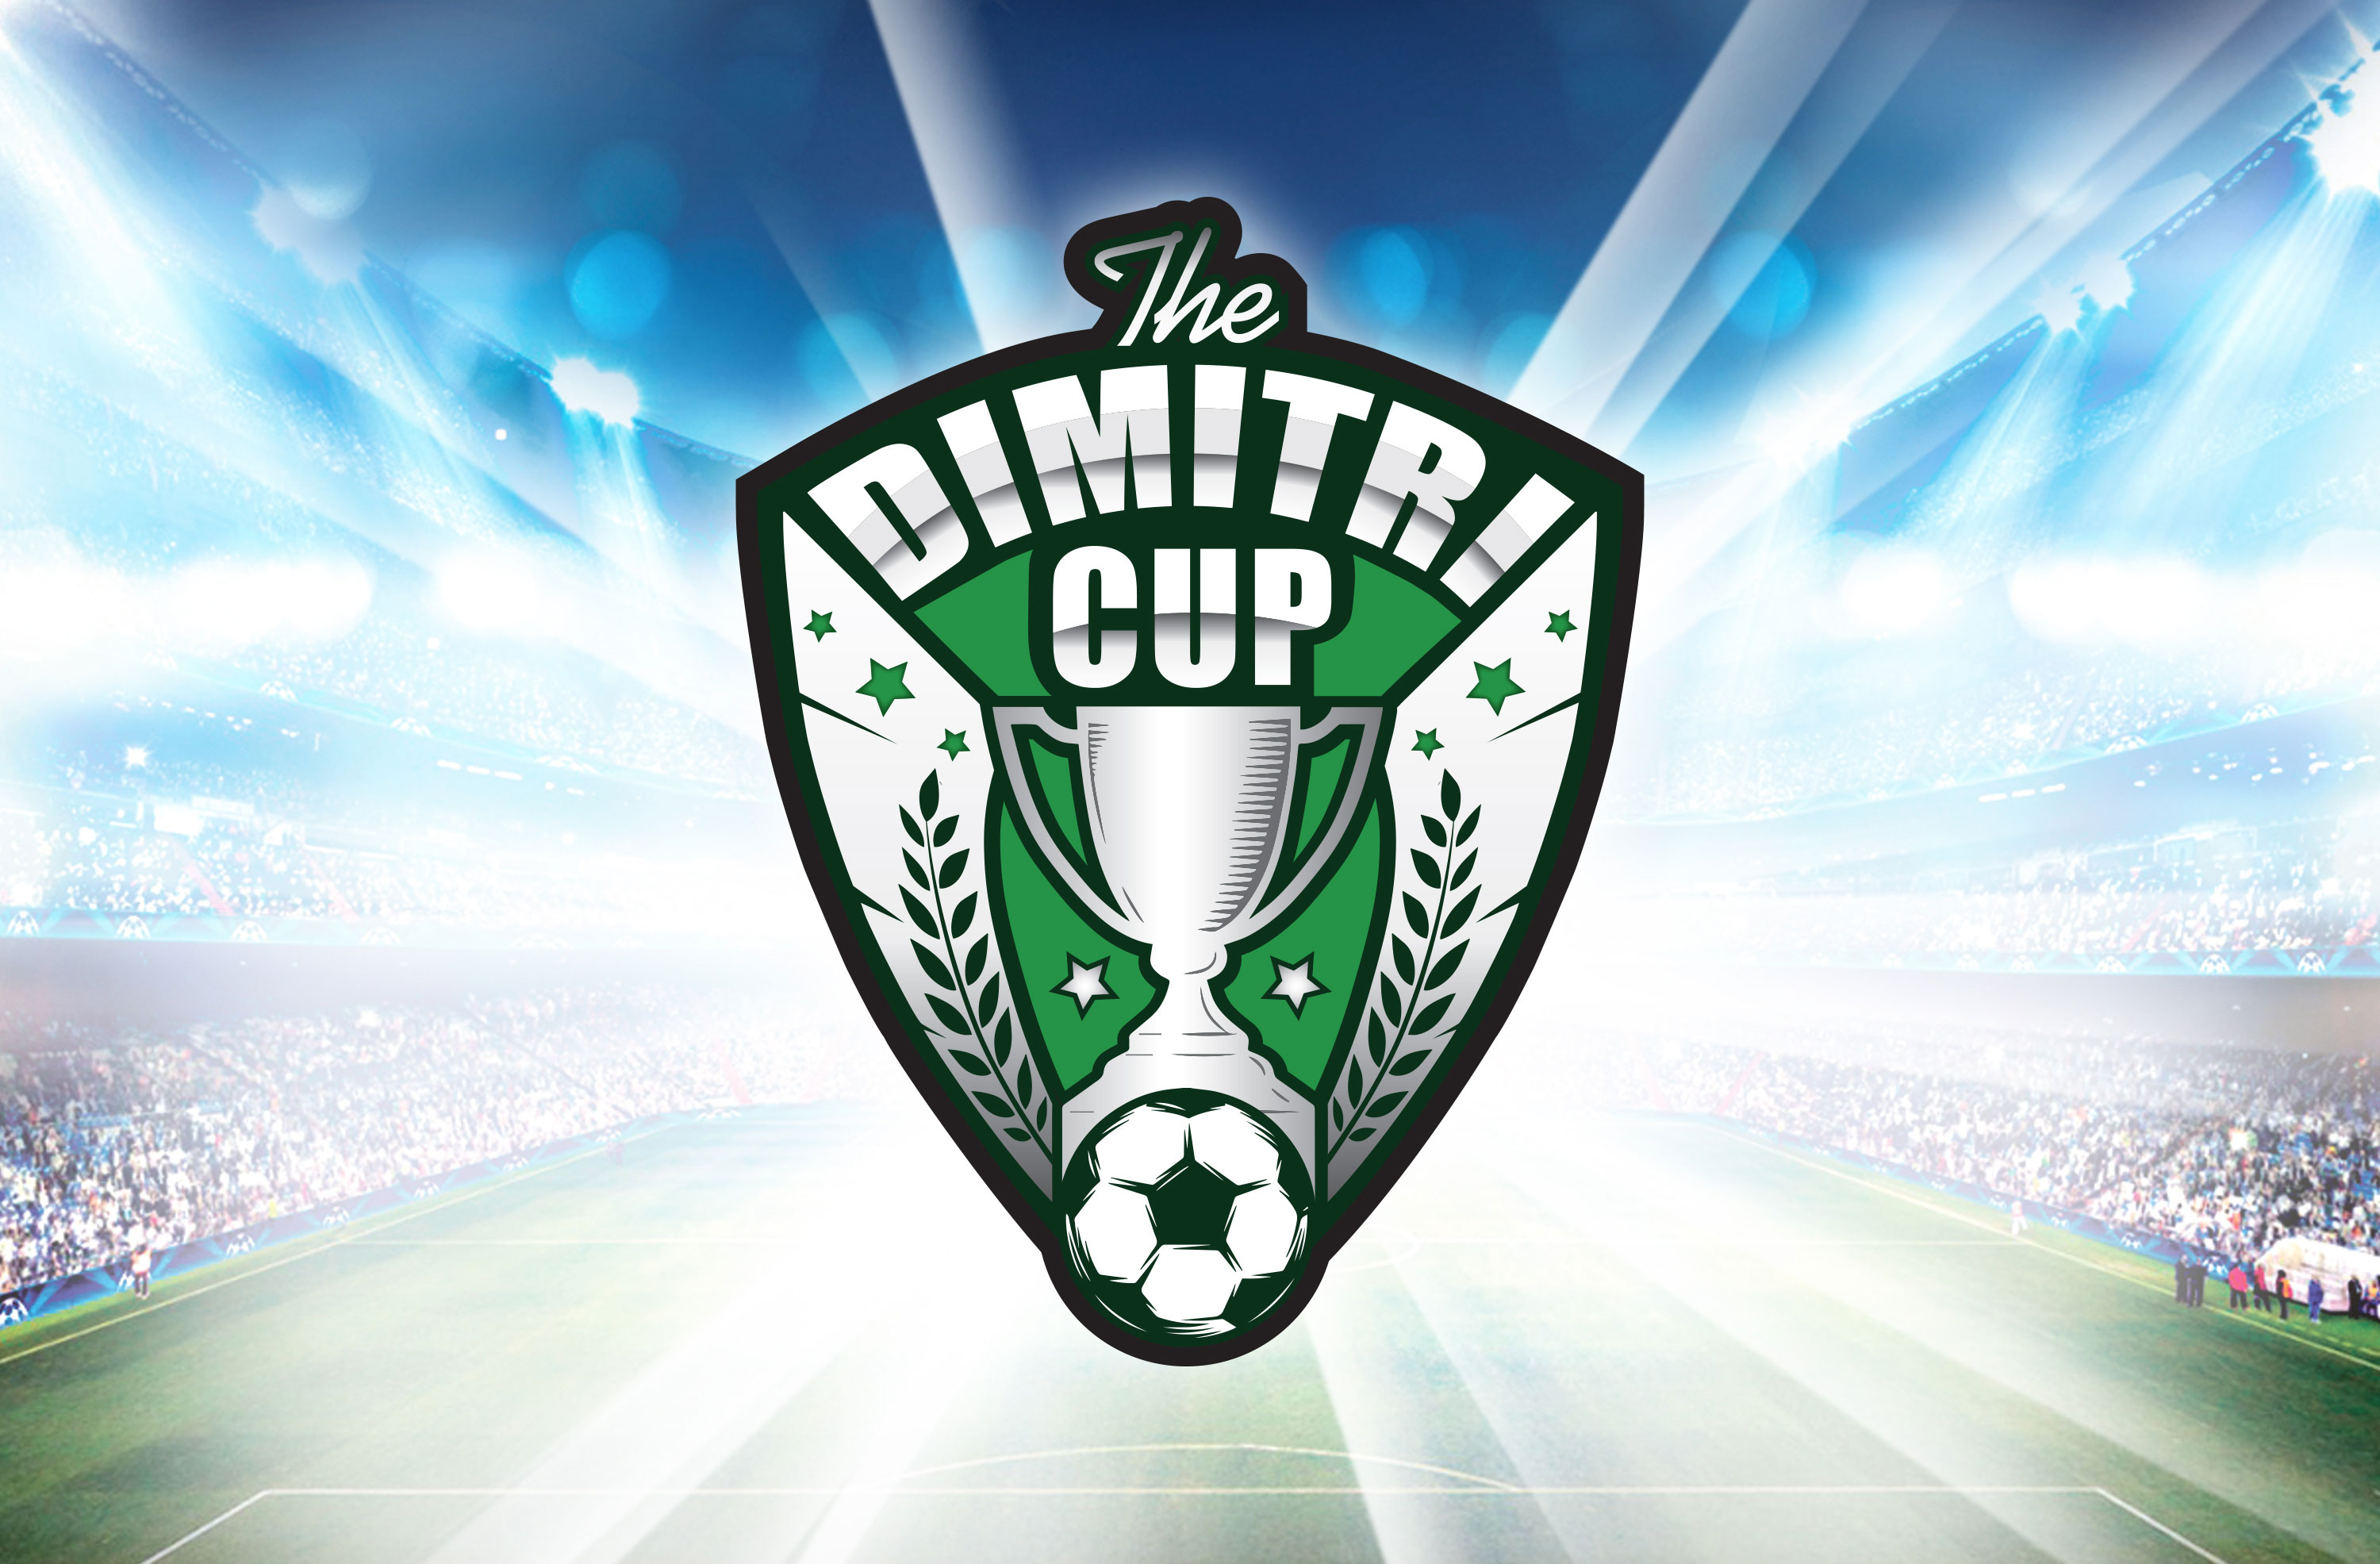 Dimitri_cup